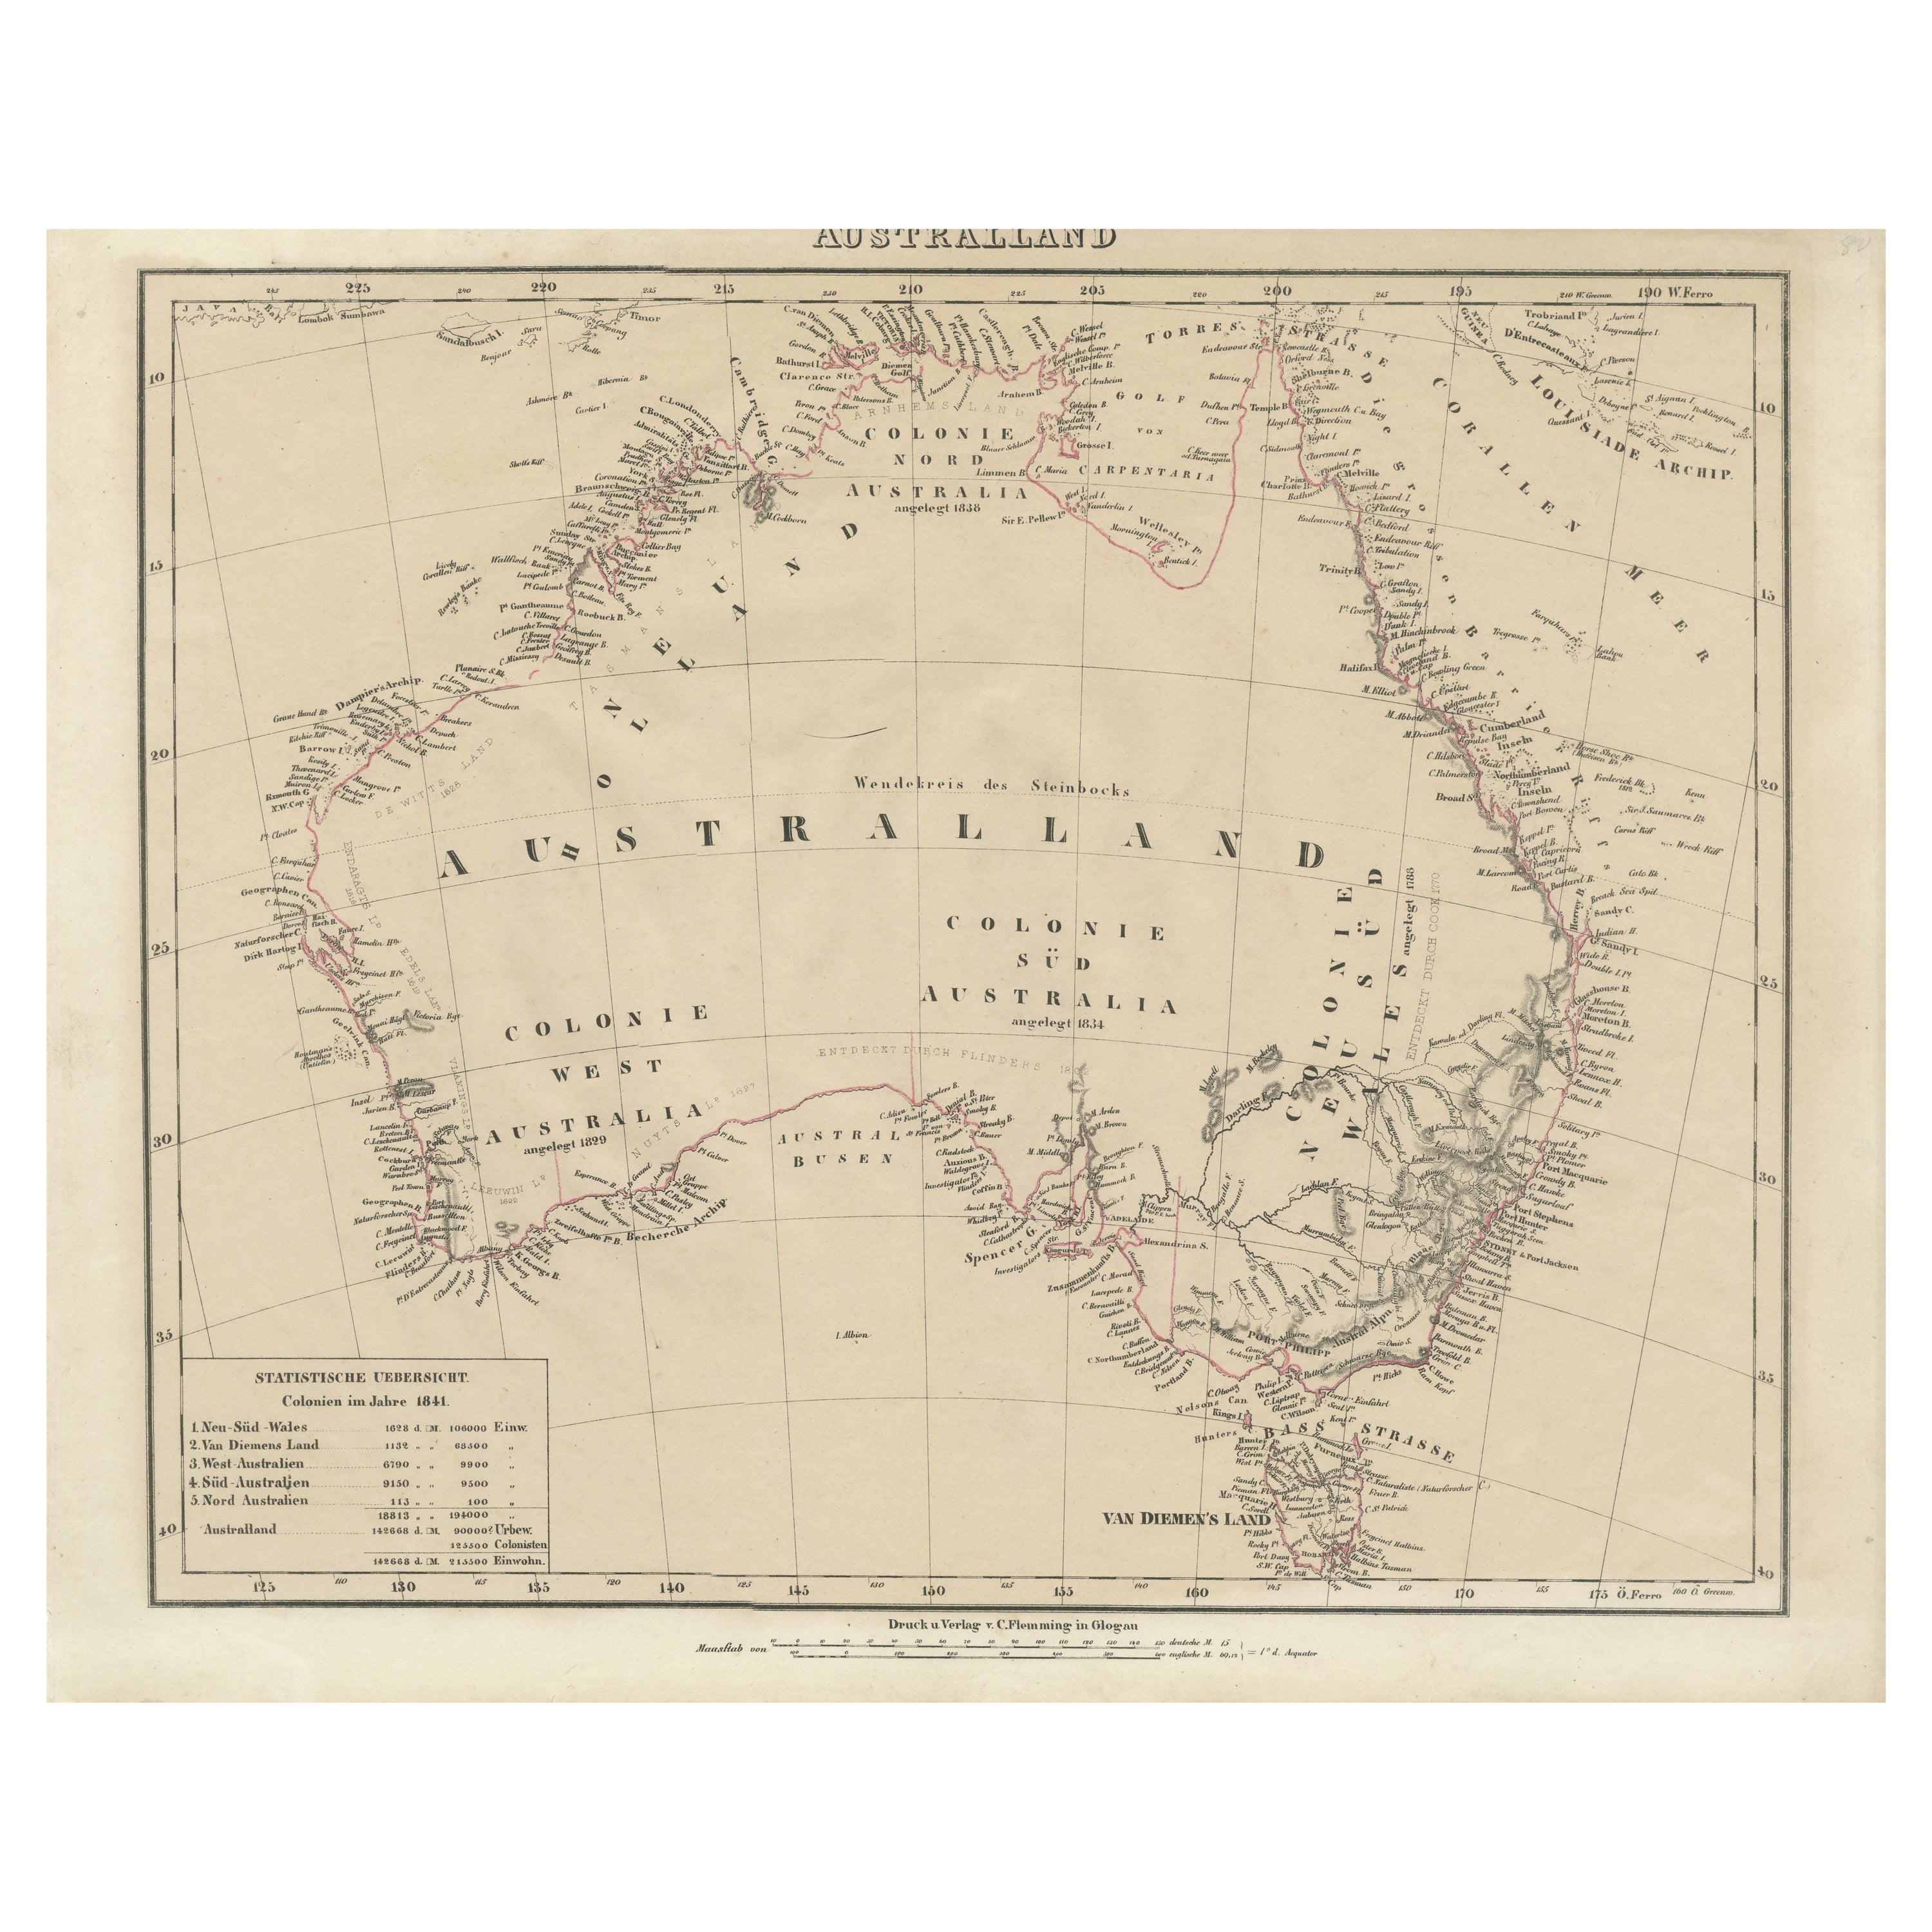 Detaillierte deutsche Karte Australiens mit Statistien aus dem Jahr 1841, veröffentlicht 1854 im Angebot